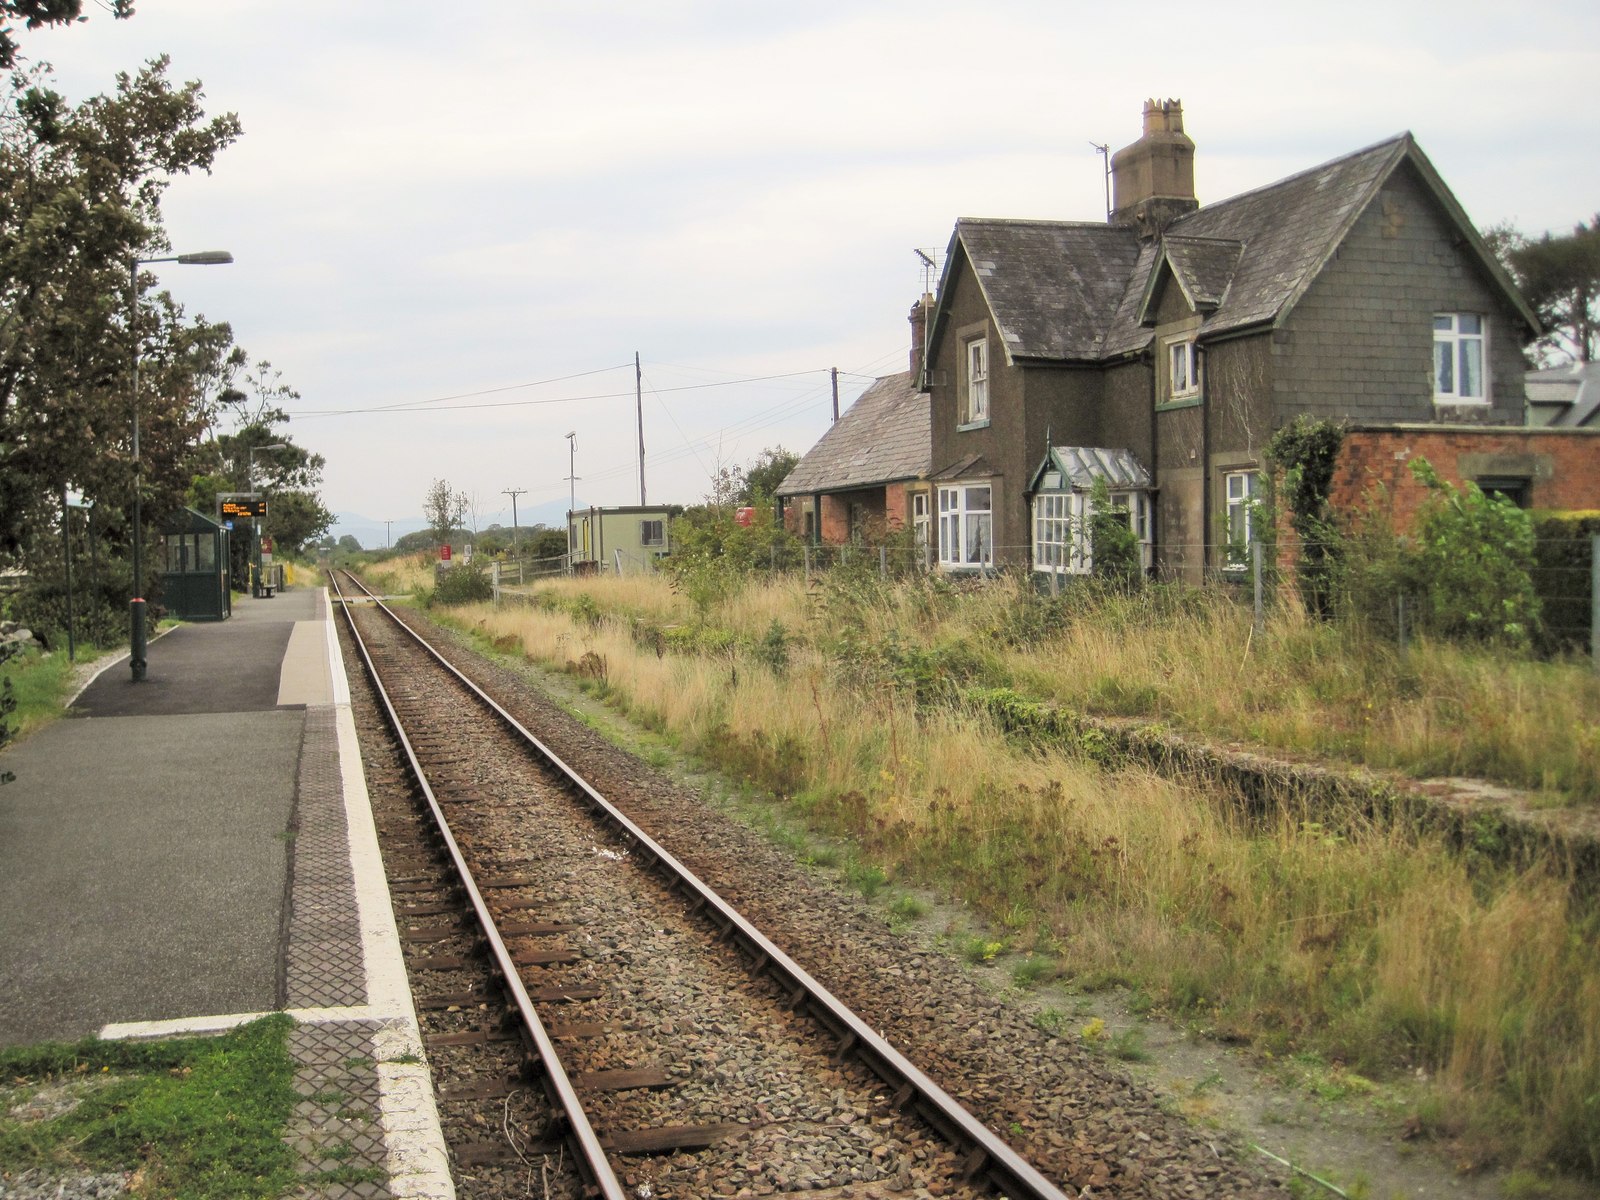 Dyffryn Ardudwy railway station